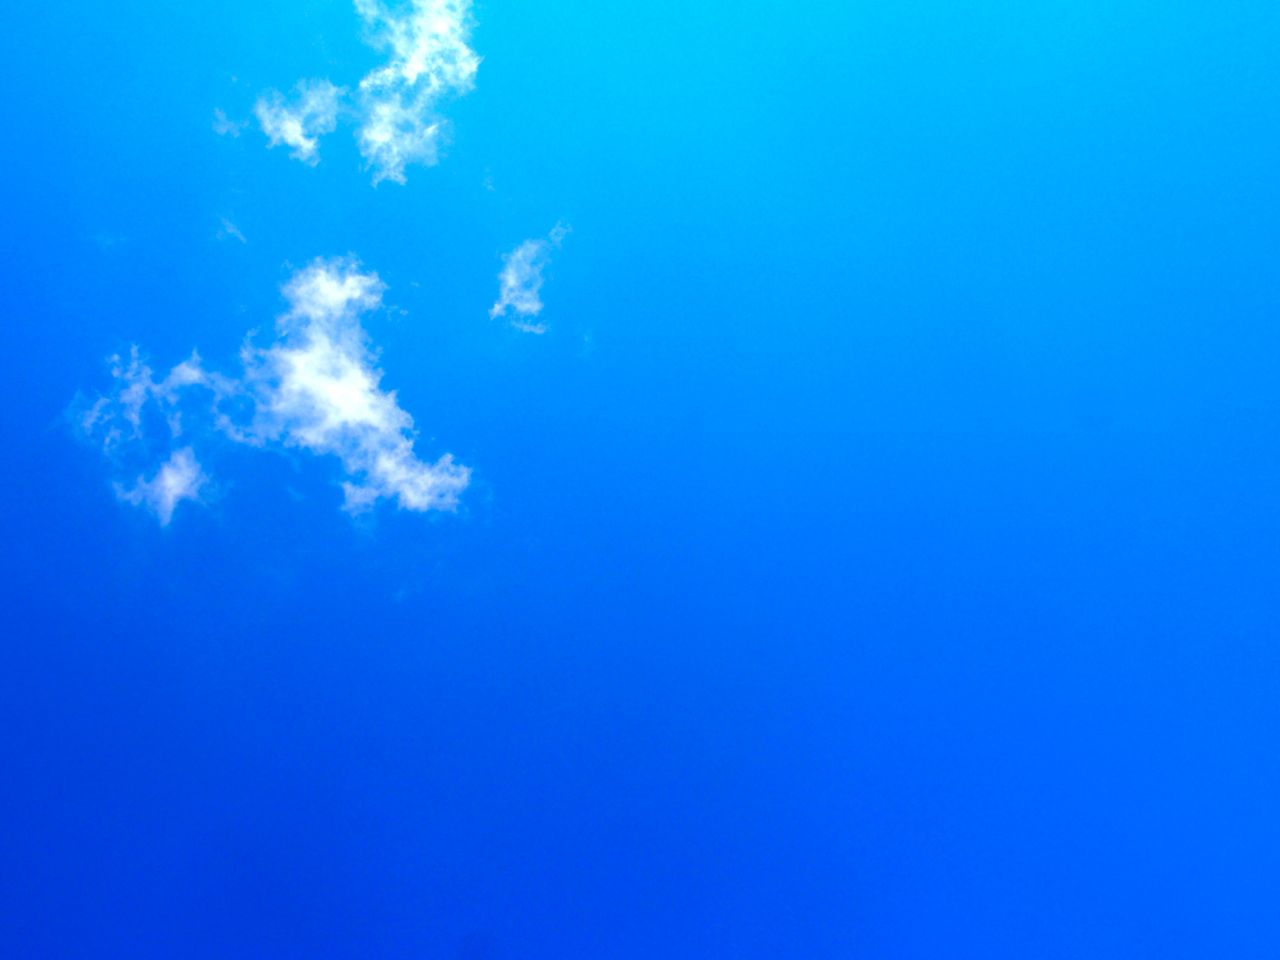 Blue-Sky.jpg